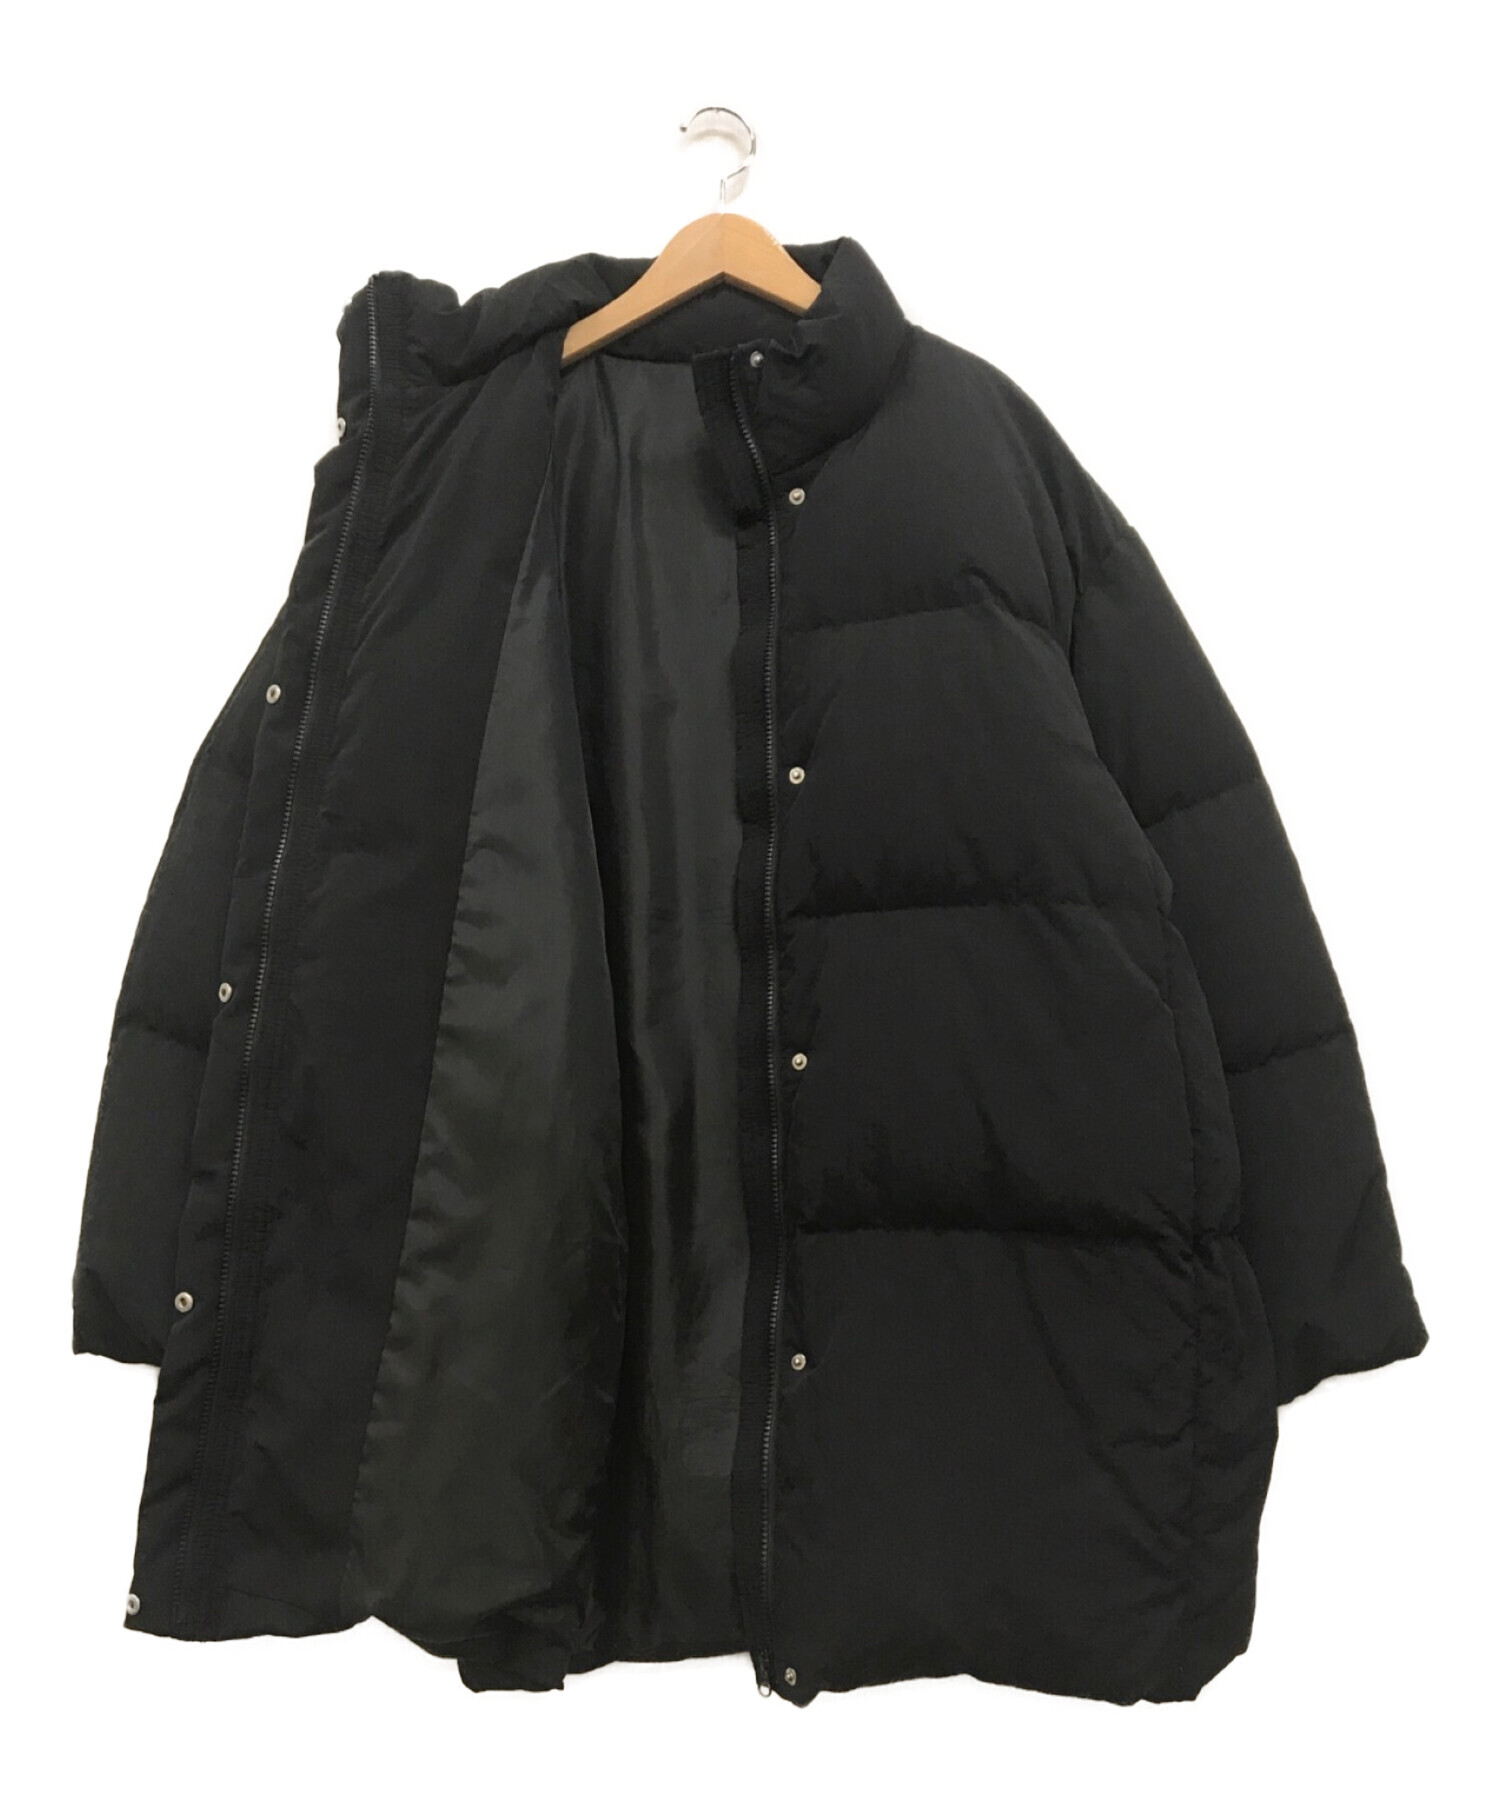 UNGRID (アングリッド) ミドル丈ダウンジャケット ブラック サイズ:M